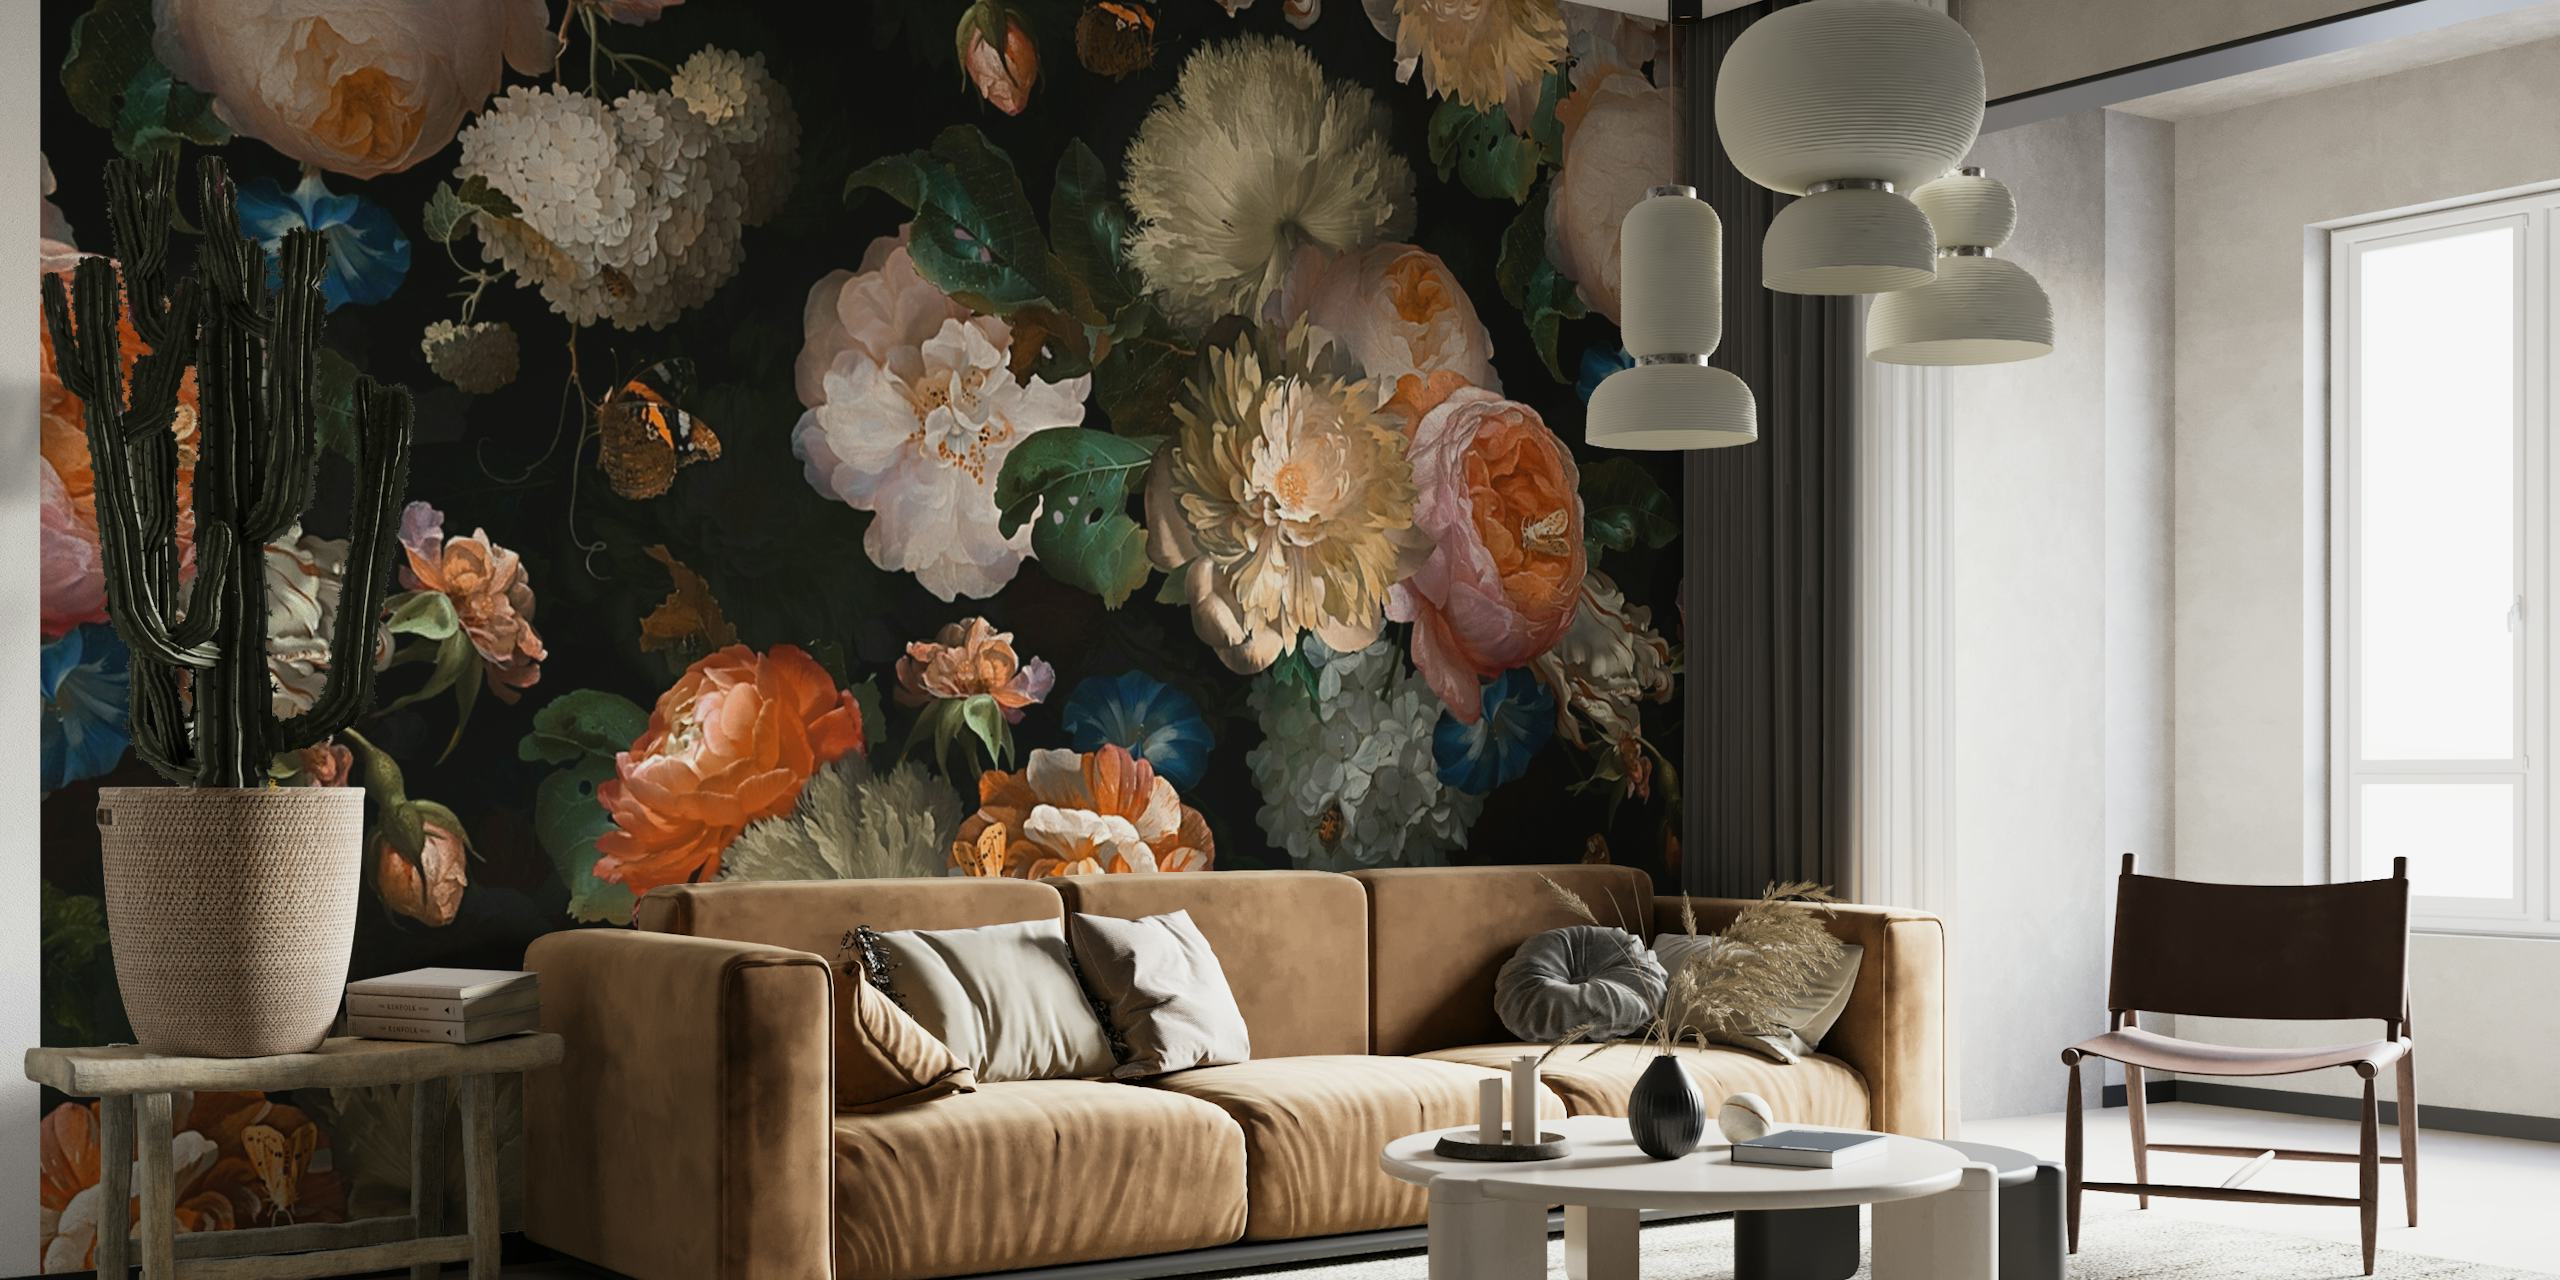 Opulento murale floreale in stile barocco con sfondo scuro e tonalità vintage.